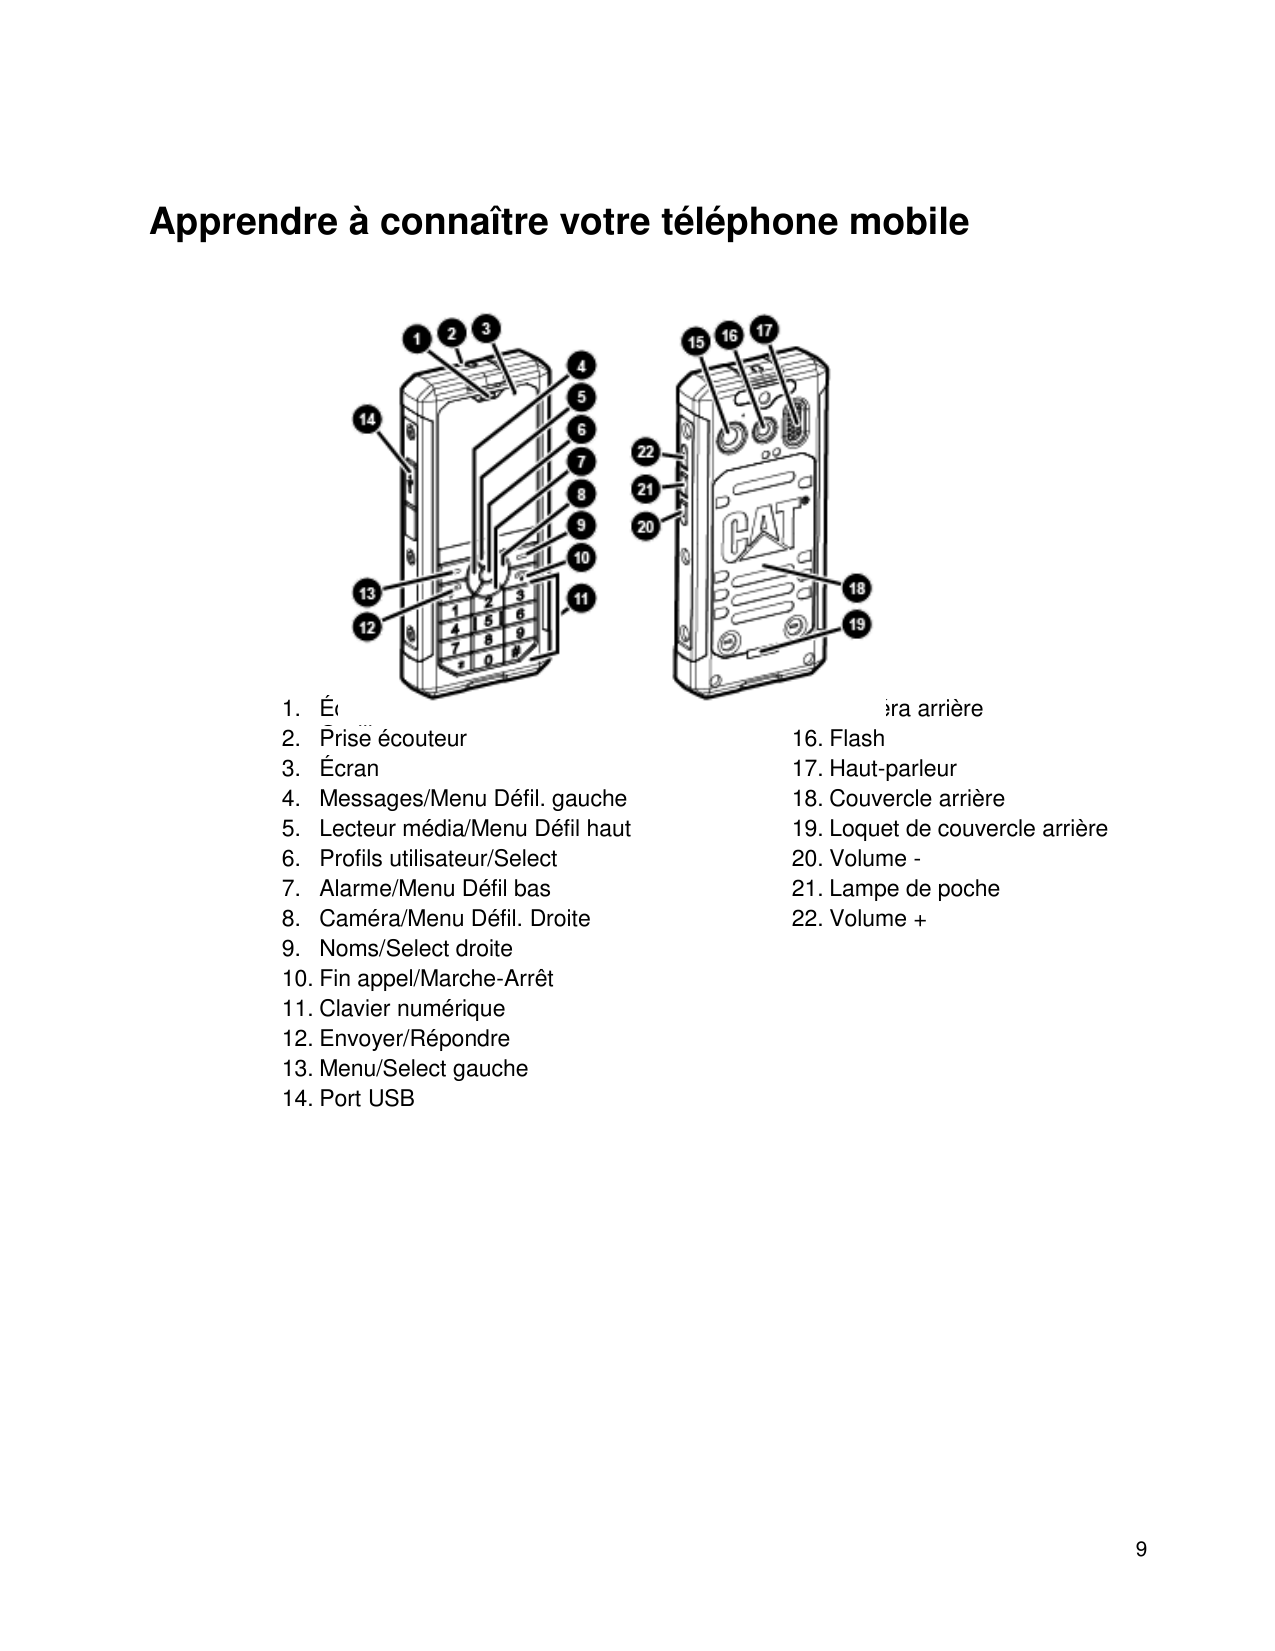 Apprendre à connaître votre téléphone mobile1. ÉcouteurOreillette2. Priseécouteur3. Écran4. Messages/Menu Défil. gauche5. Lecteu